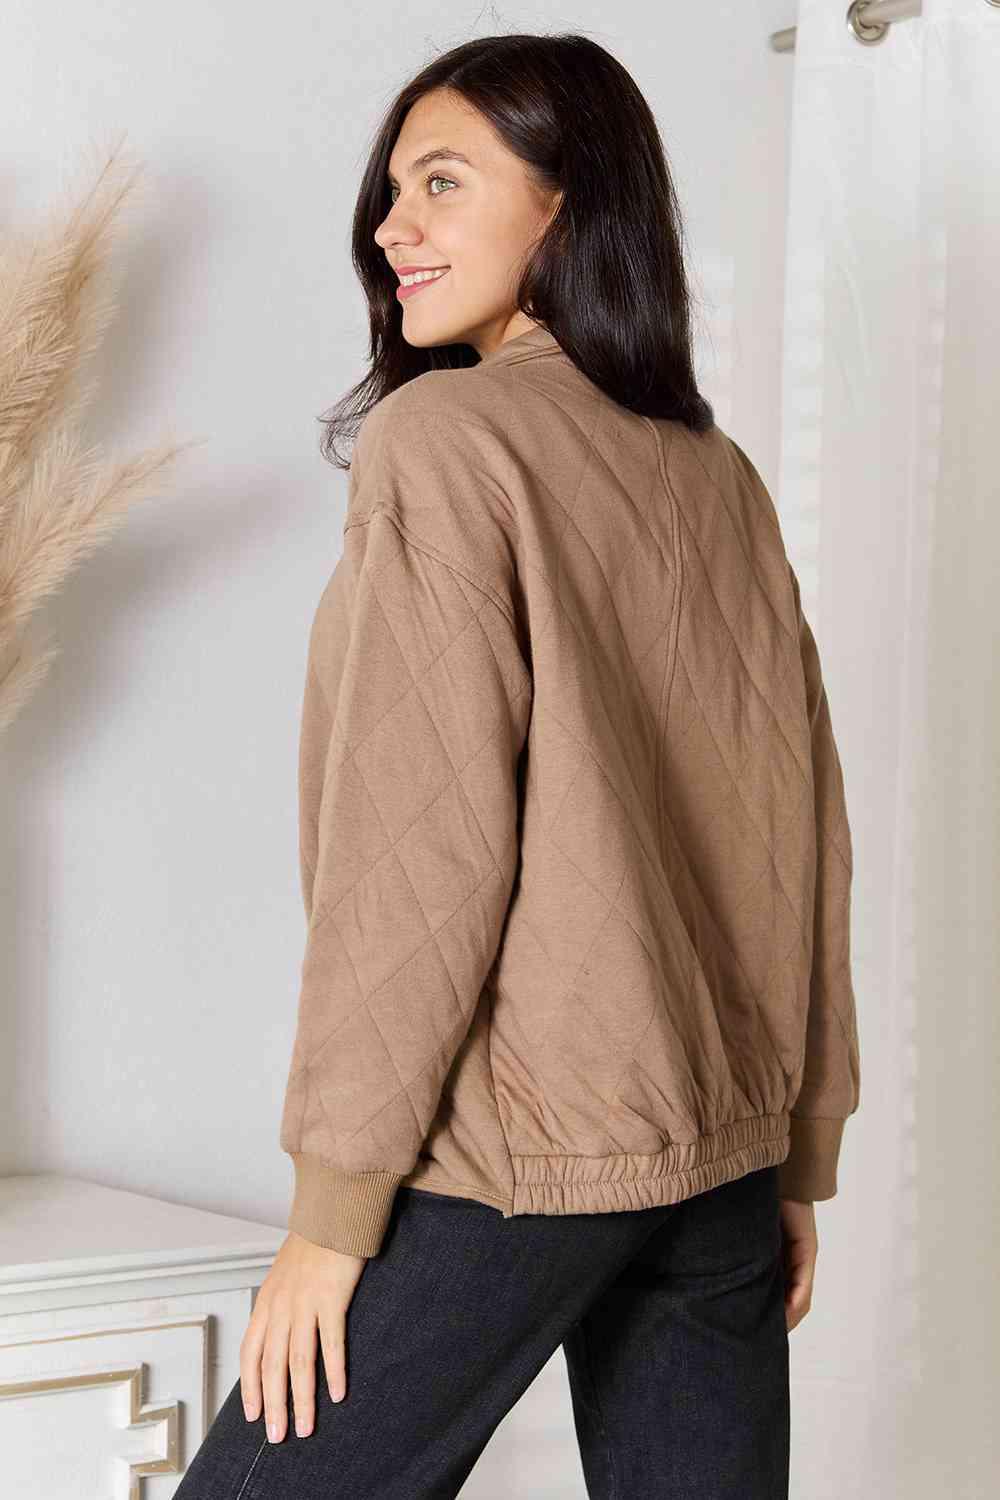 Practical Mocha Women's Plus Size Zip Up Jacket - MXSTUDIO.COM